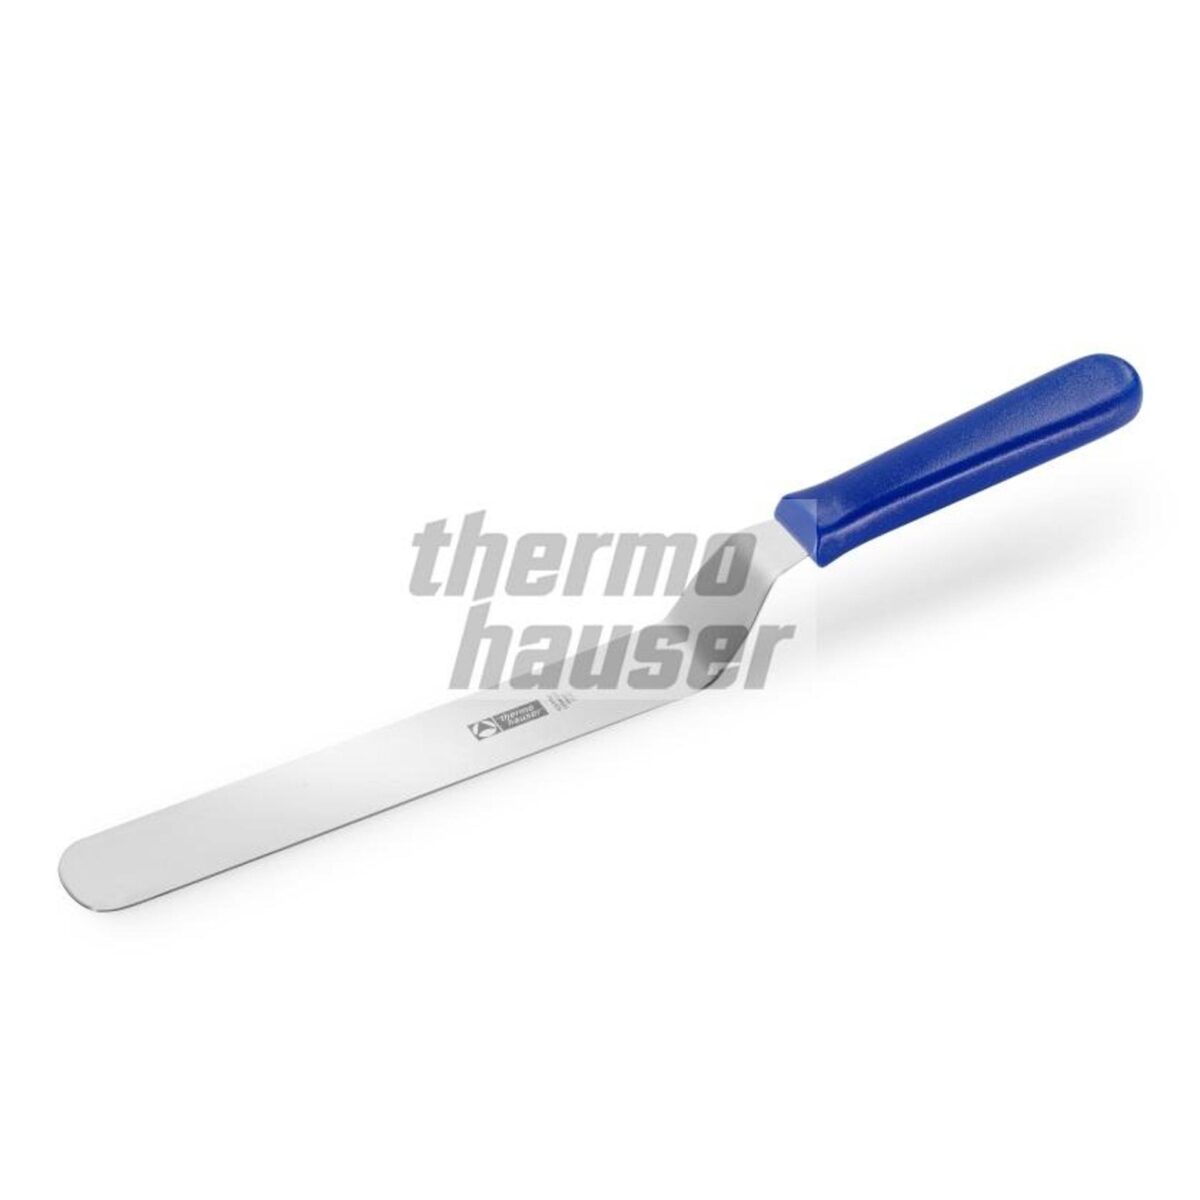 Thermohauser Palet Bıçağı Eğik 15 Cm